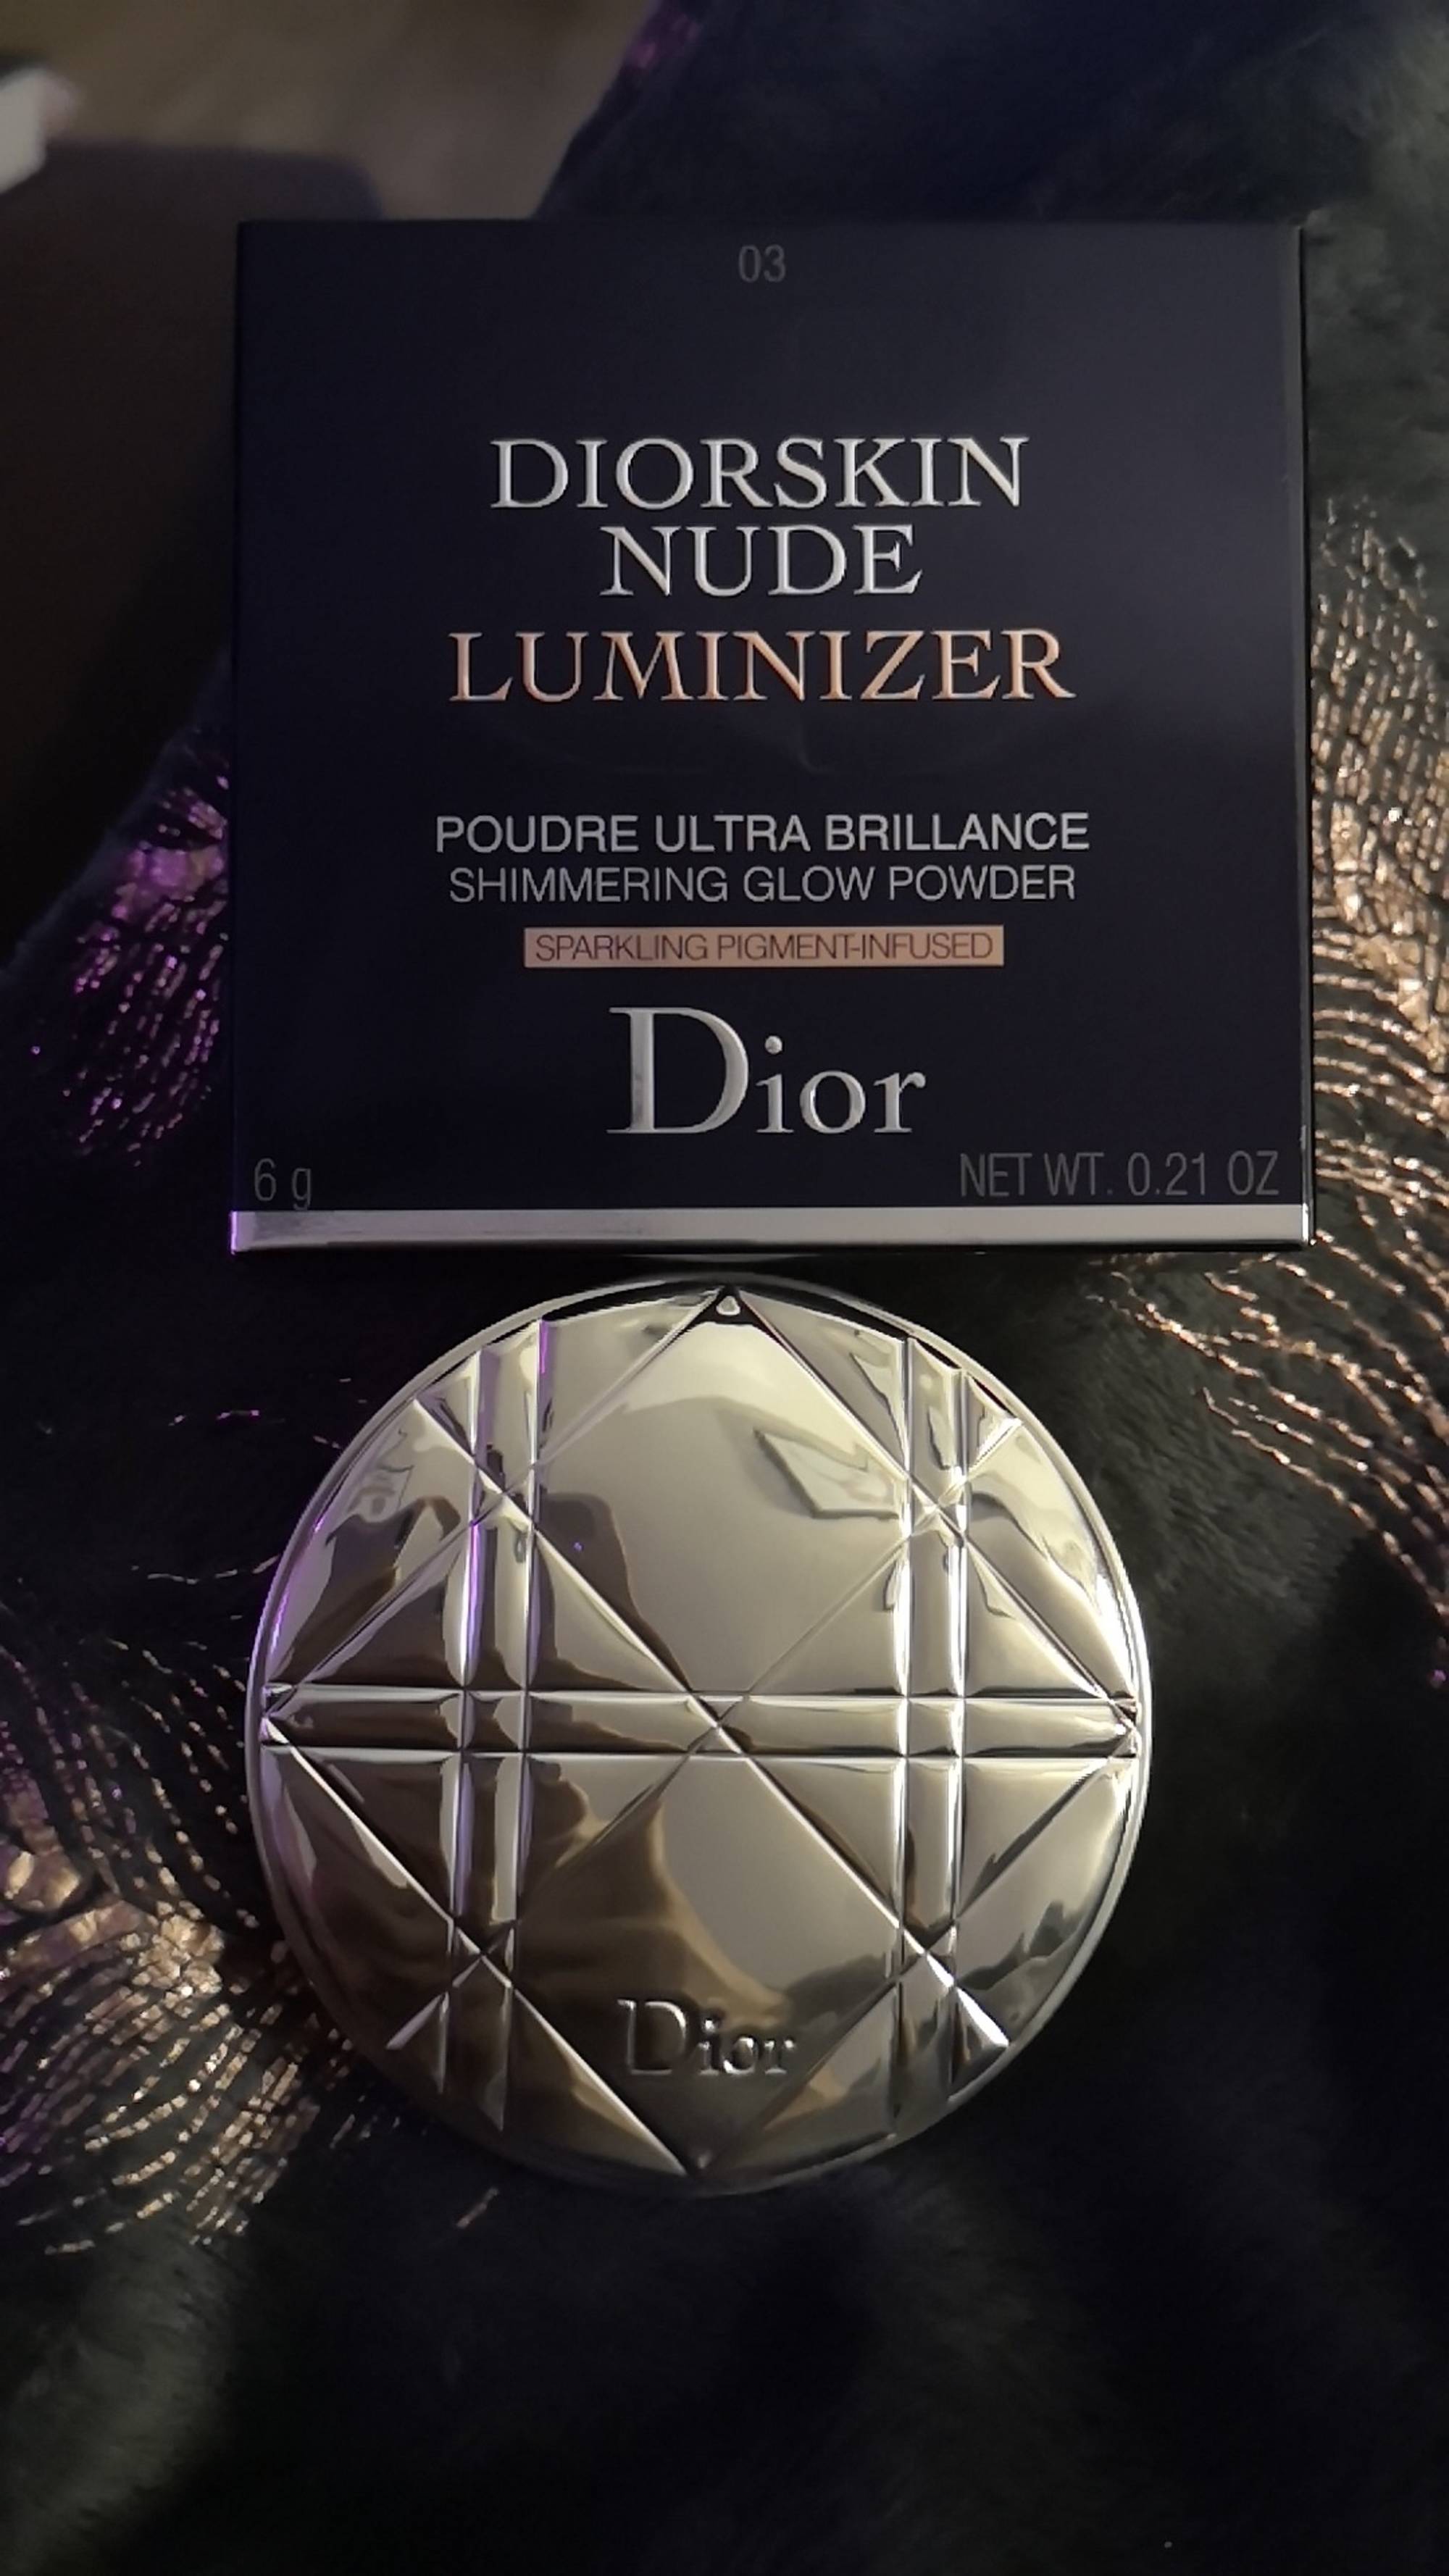 DIOR - Diorskin nude luminizer - Poudre ultra brillance